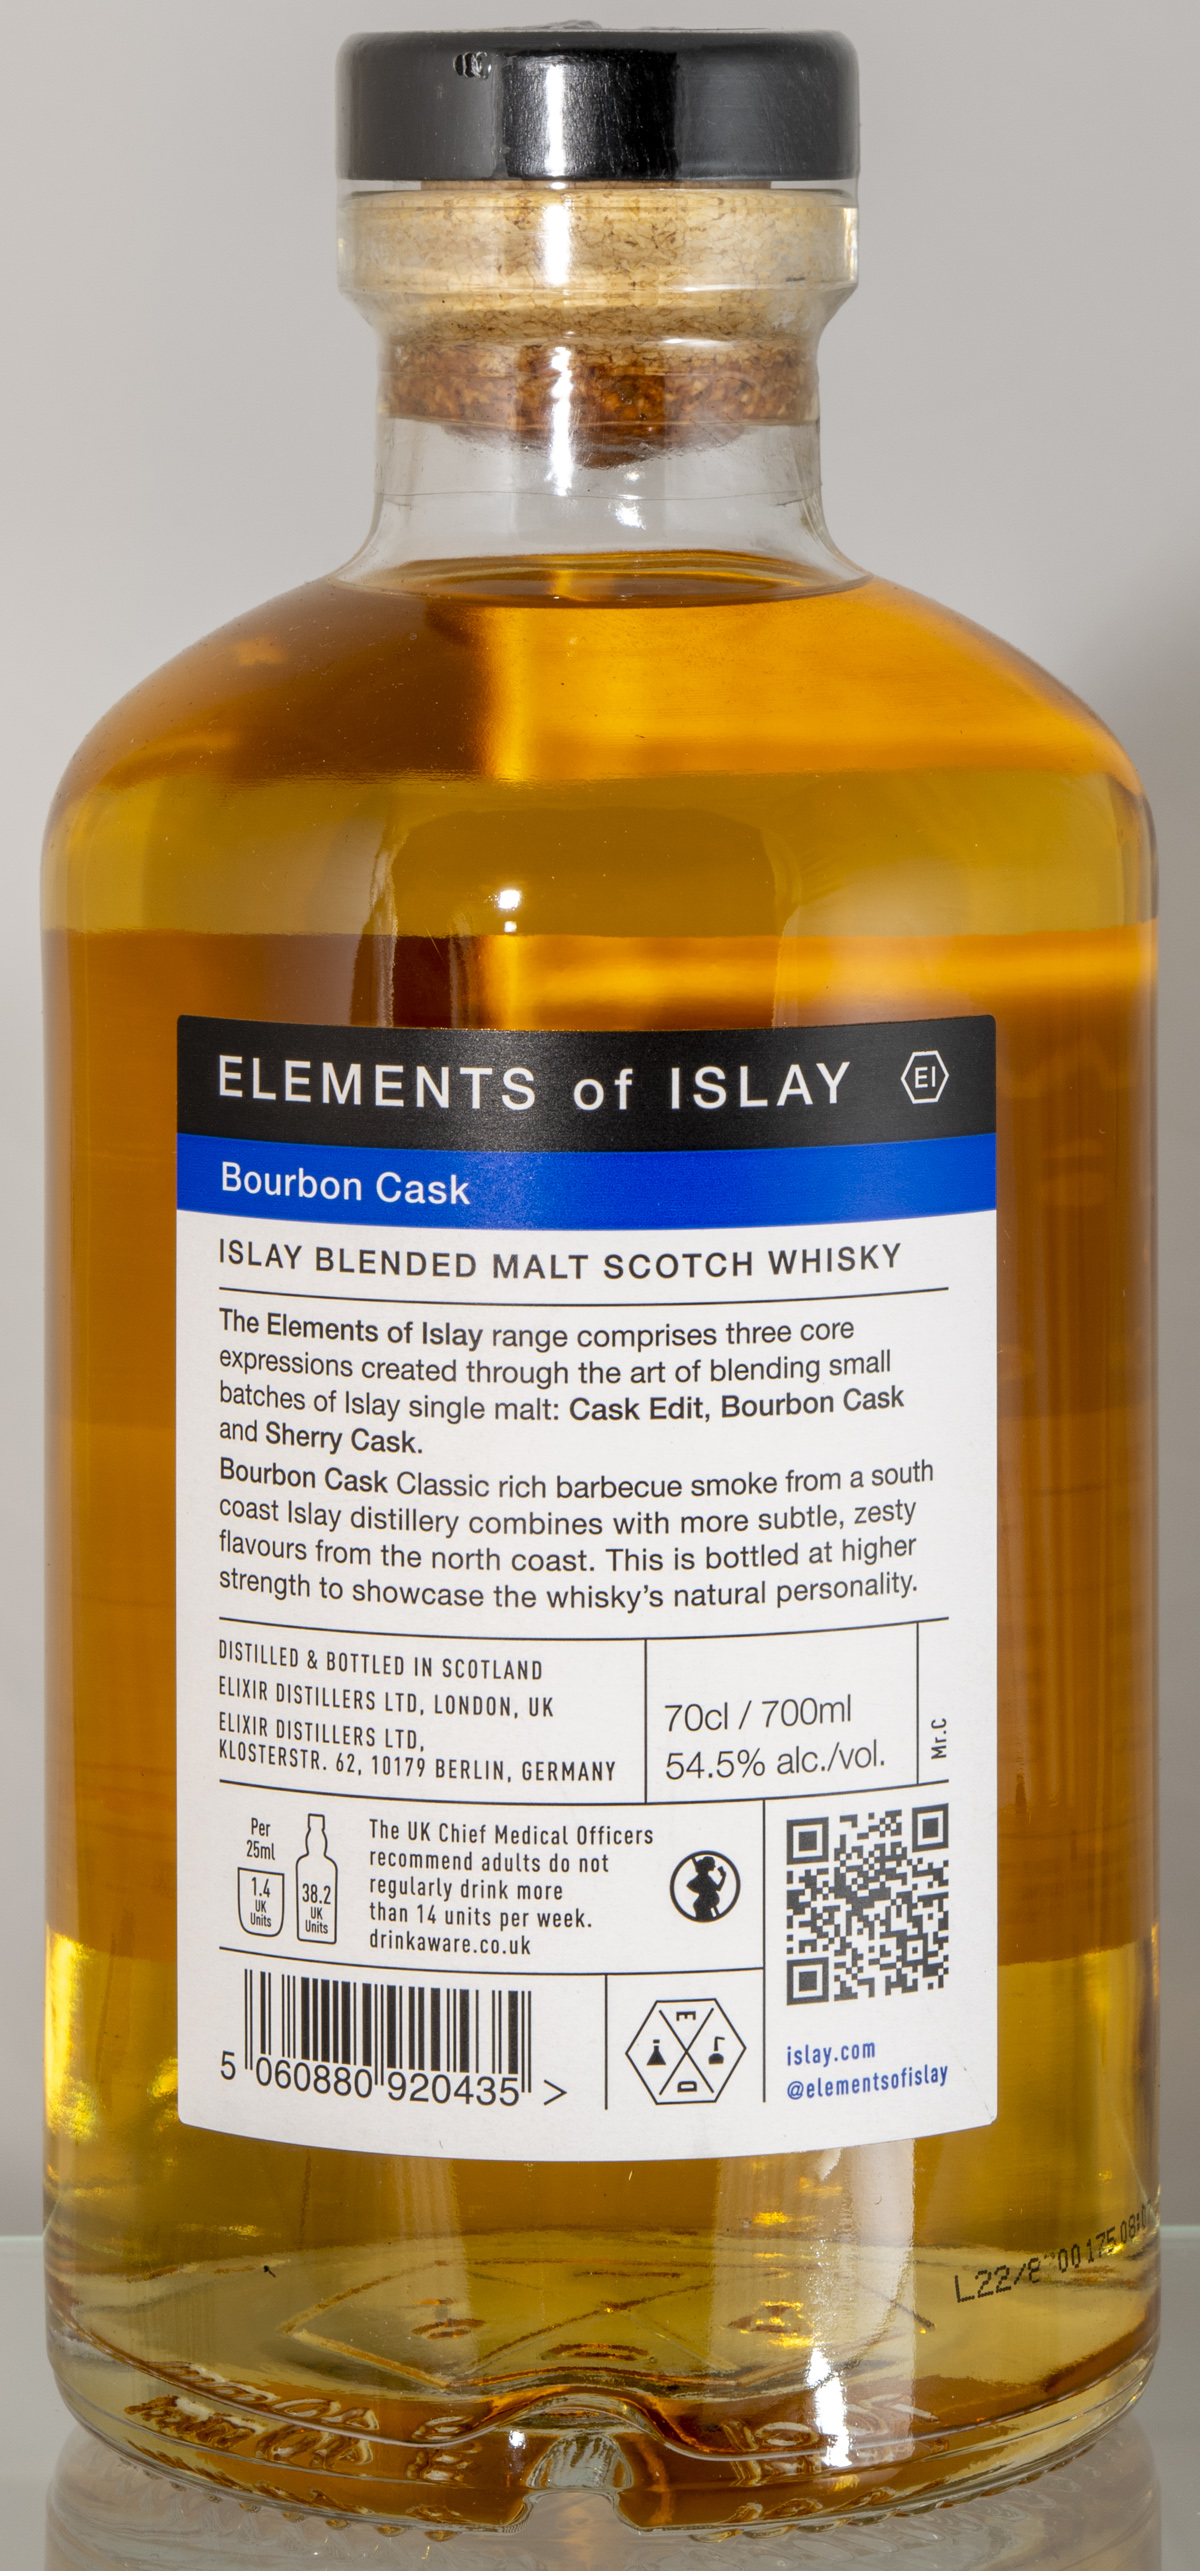 Billede: D85_8317 - Elements of Islay - Bourbon Cask - bottle back.jpg